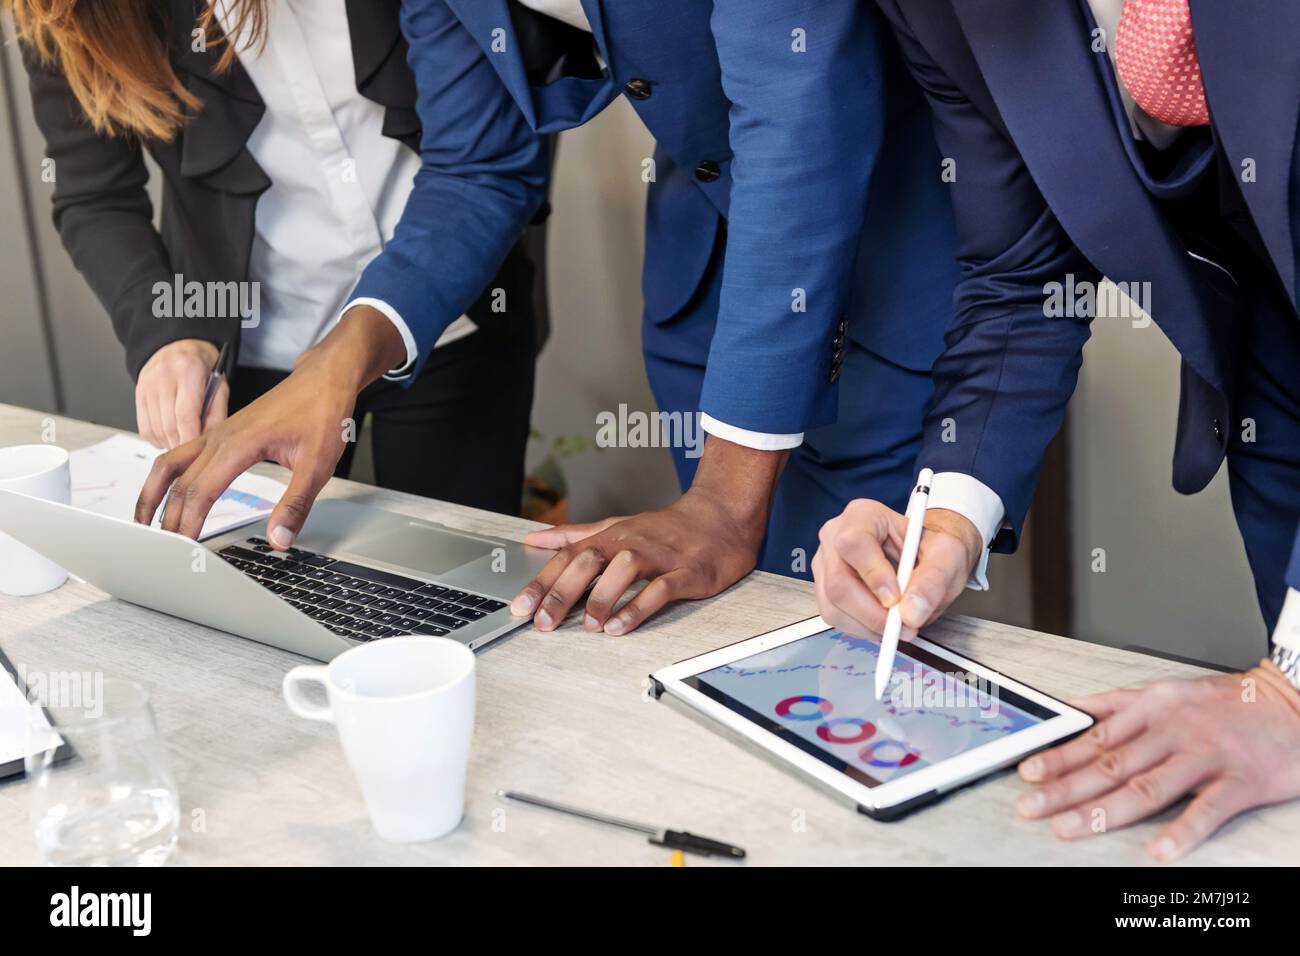 Beschneiden Sie anonyme Kollegen in formeller Kleidung, die mit Laptop und Tablet am Tisch stehen, während Sie in einem modernen Büro an einem Geschäftsplan arbeiten Stockfoto